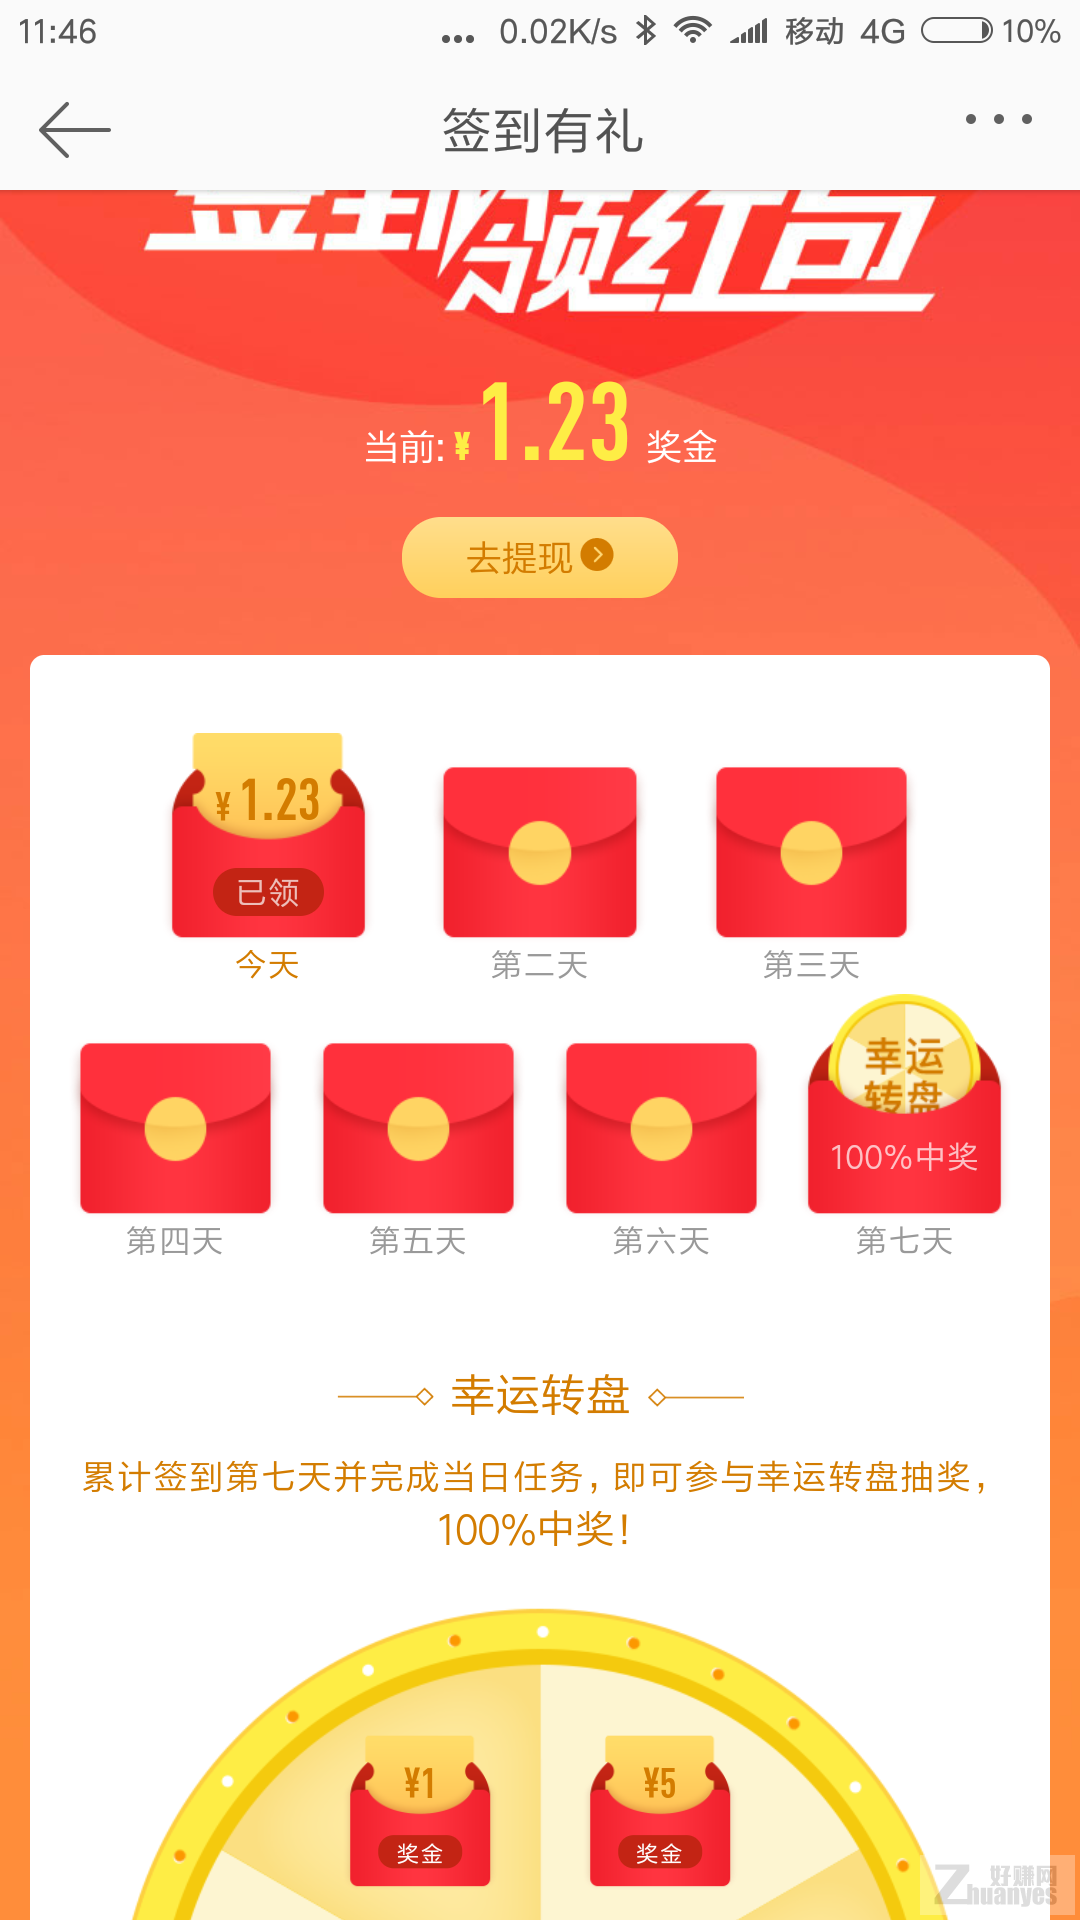 Screenshot_2017-10-23-11-46-24-715_com.sina.weibo.png